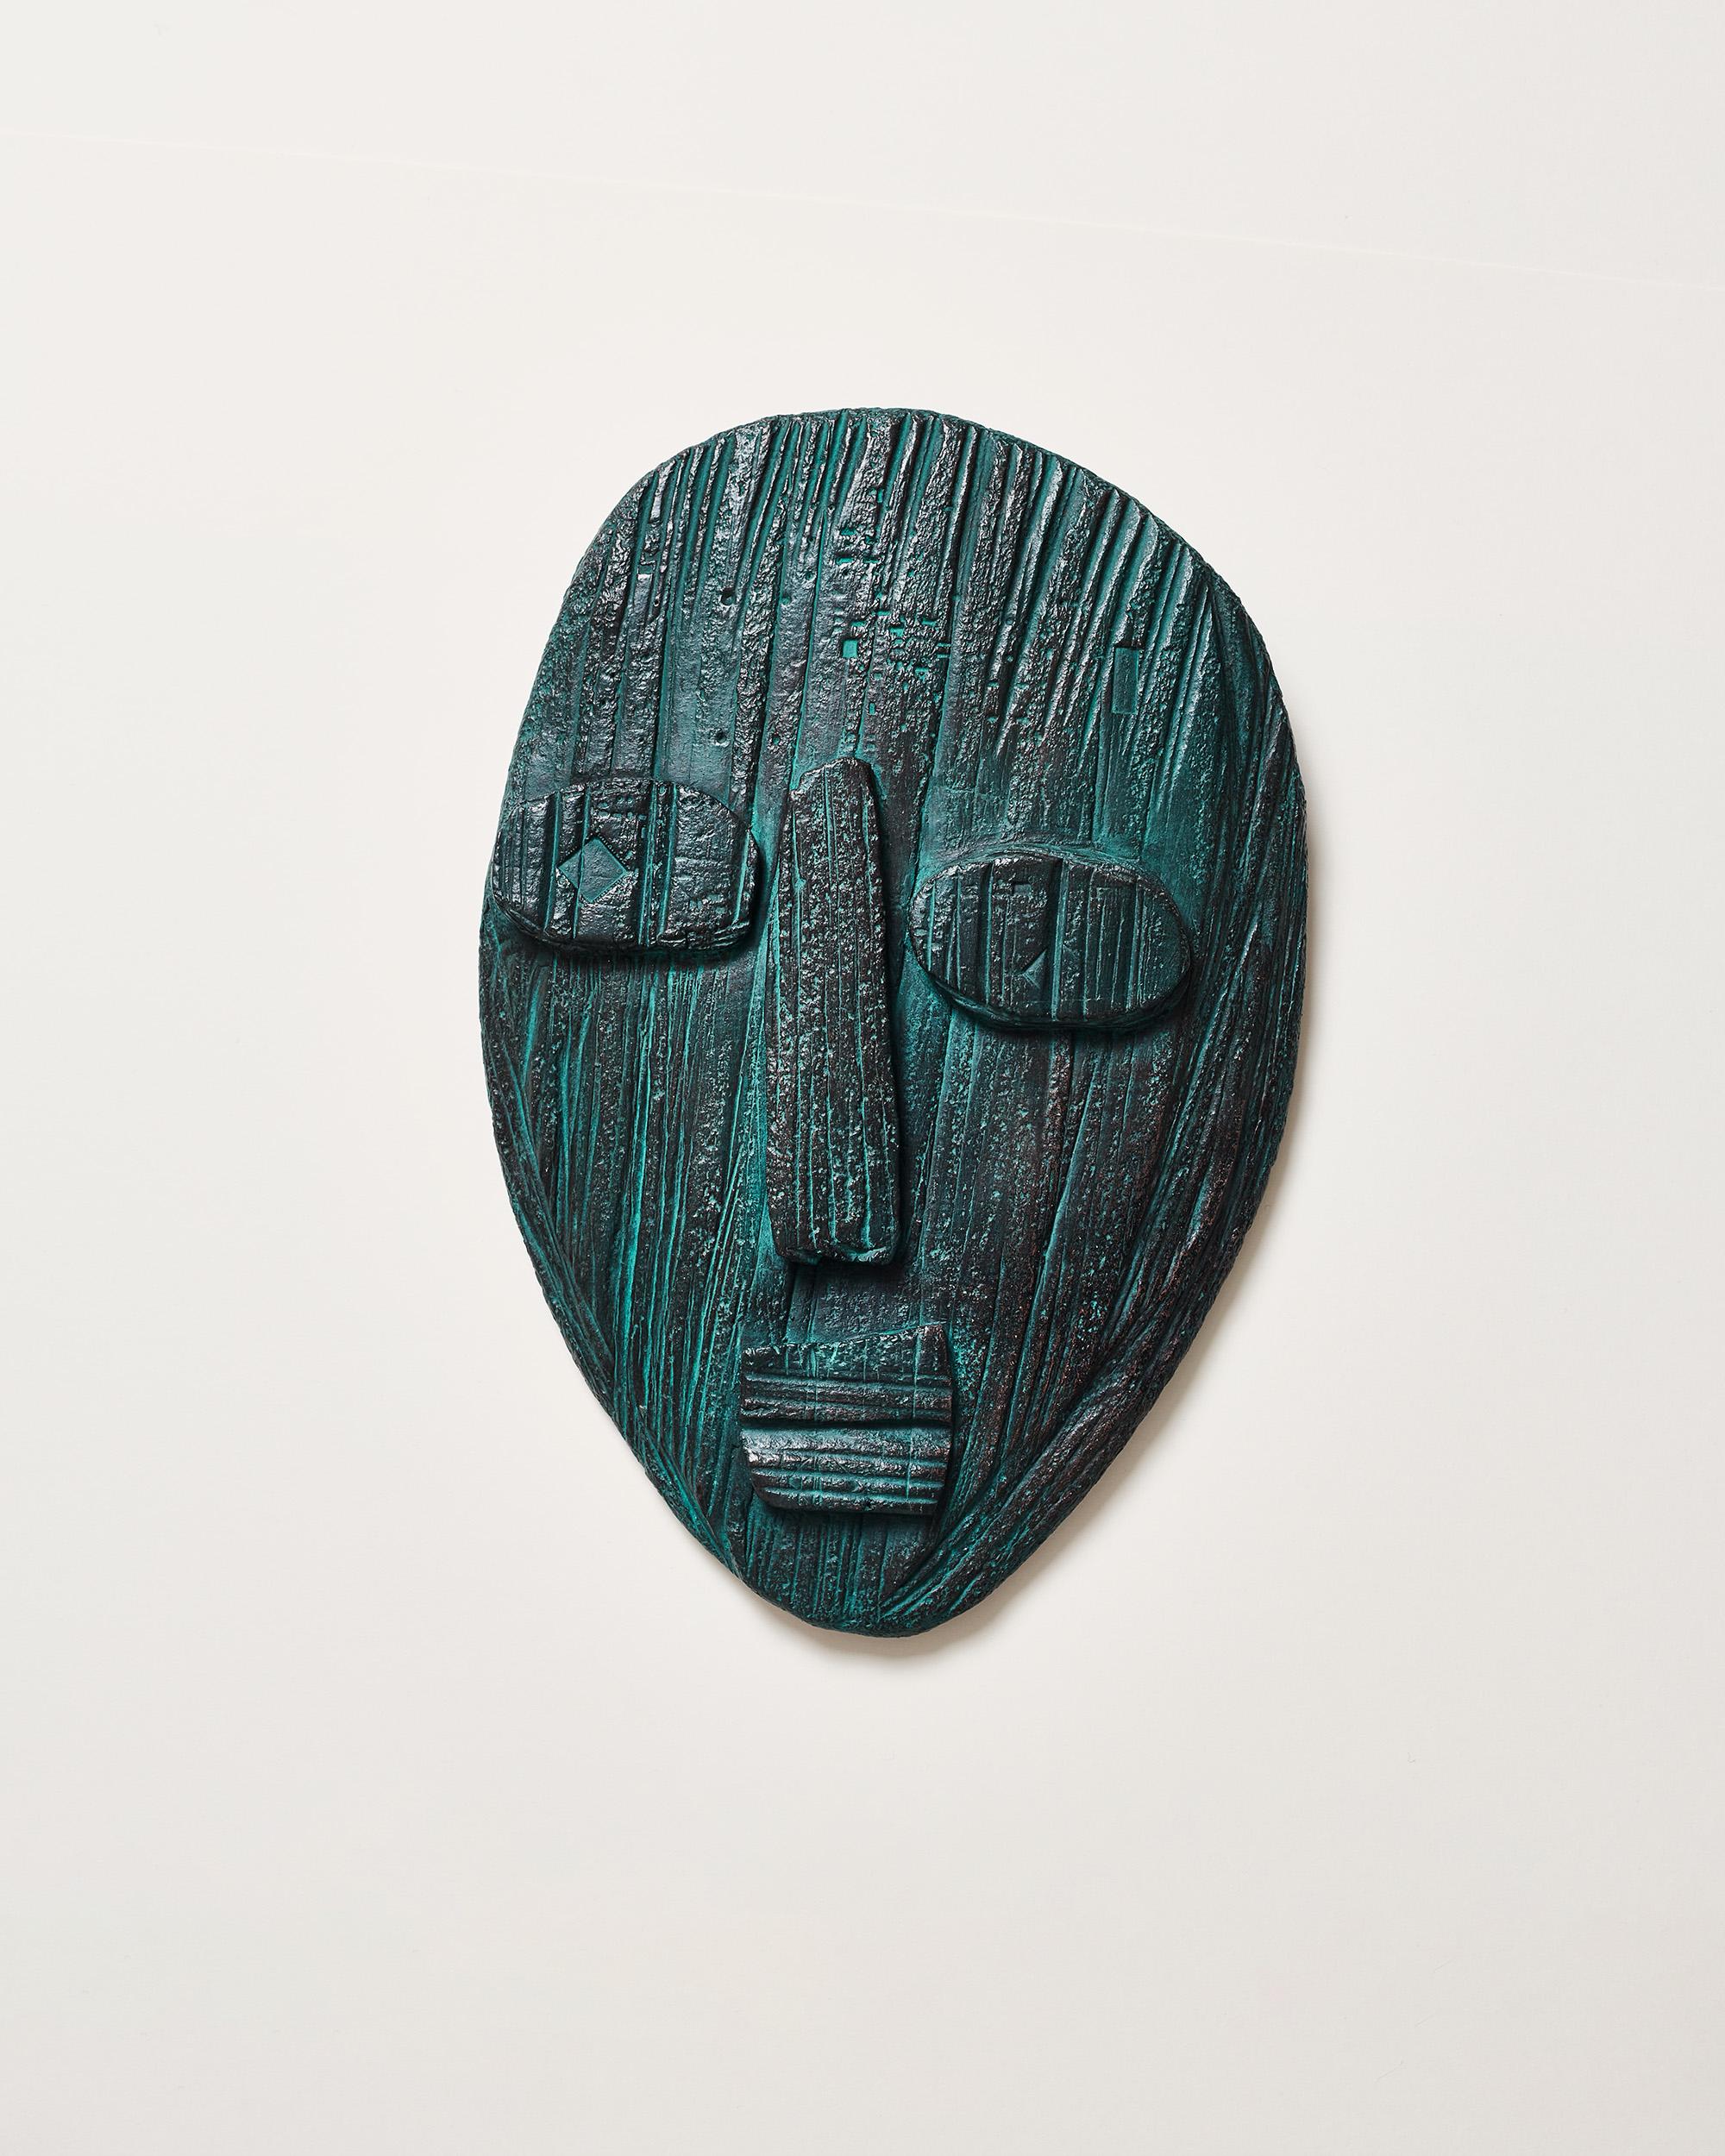 Masque origine - Contemporary Ceramic portrait sculpture